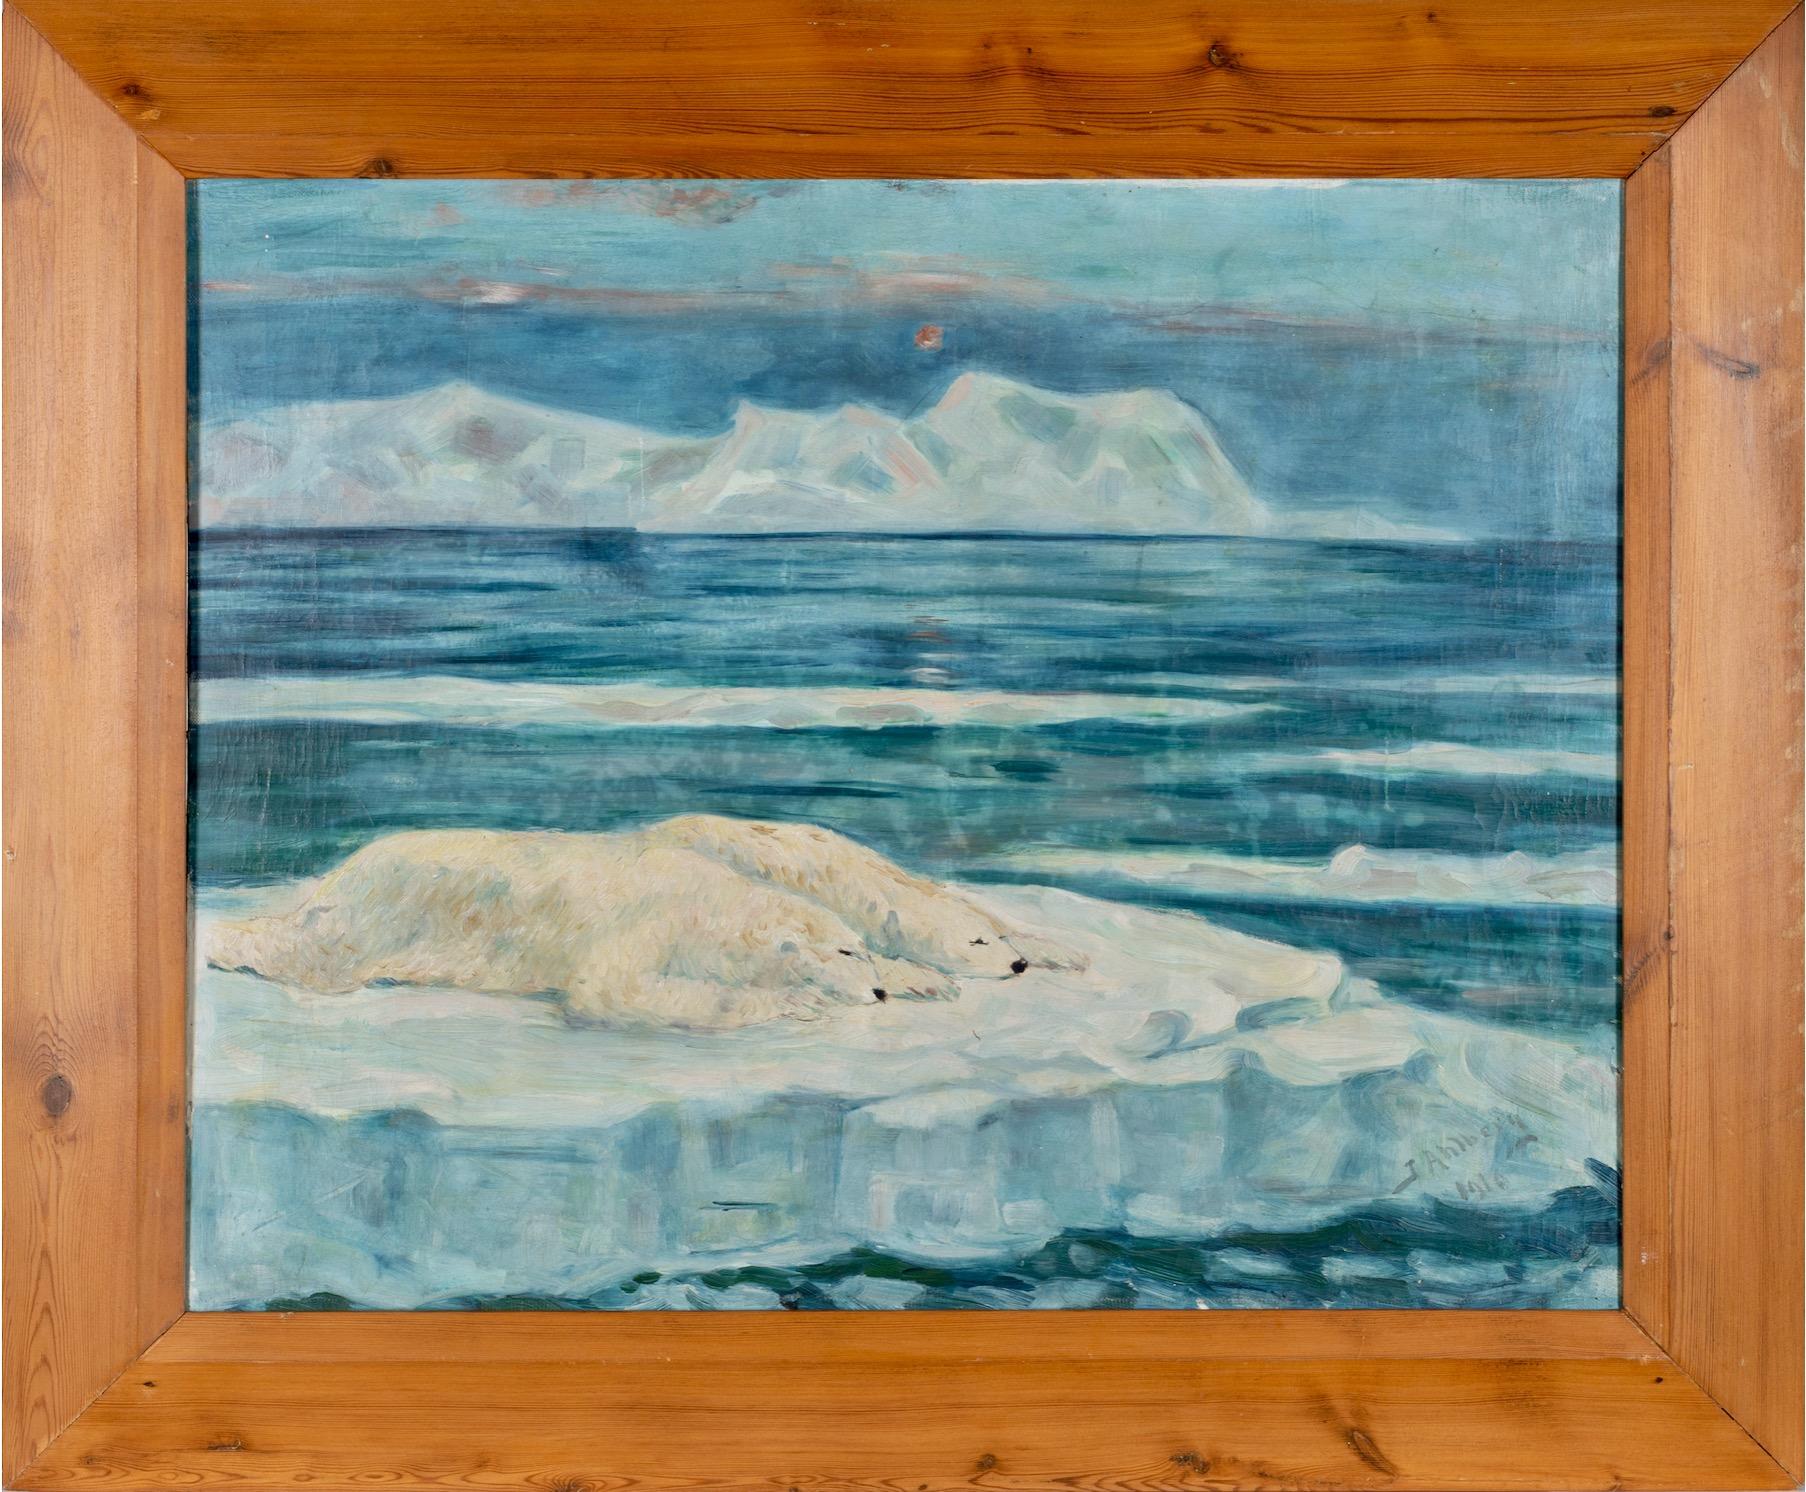 Ein schönes Gemälde von John Ahlberg, signiert und datiert 1910 von zwei Eisbären, die auf dem Eis in der Arktis schlafen, mit Eisbergen im Hintergrund und einigen Eisschollen auf dem offenen Meer. Die Arktis war um die Jahrhundertwende ein